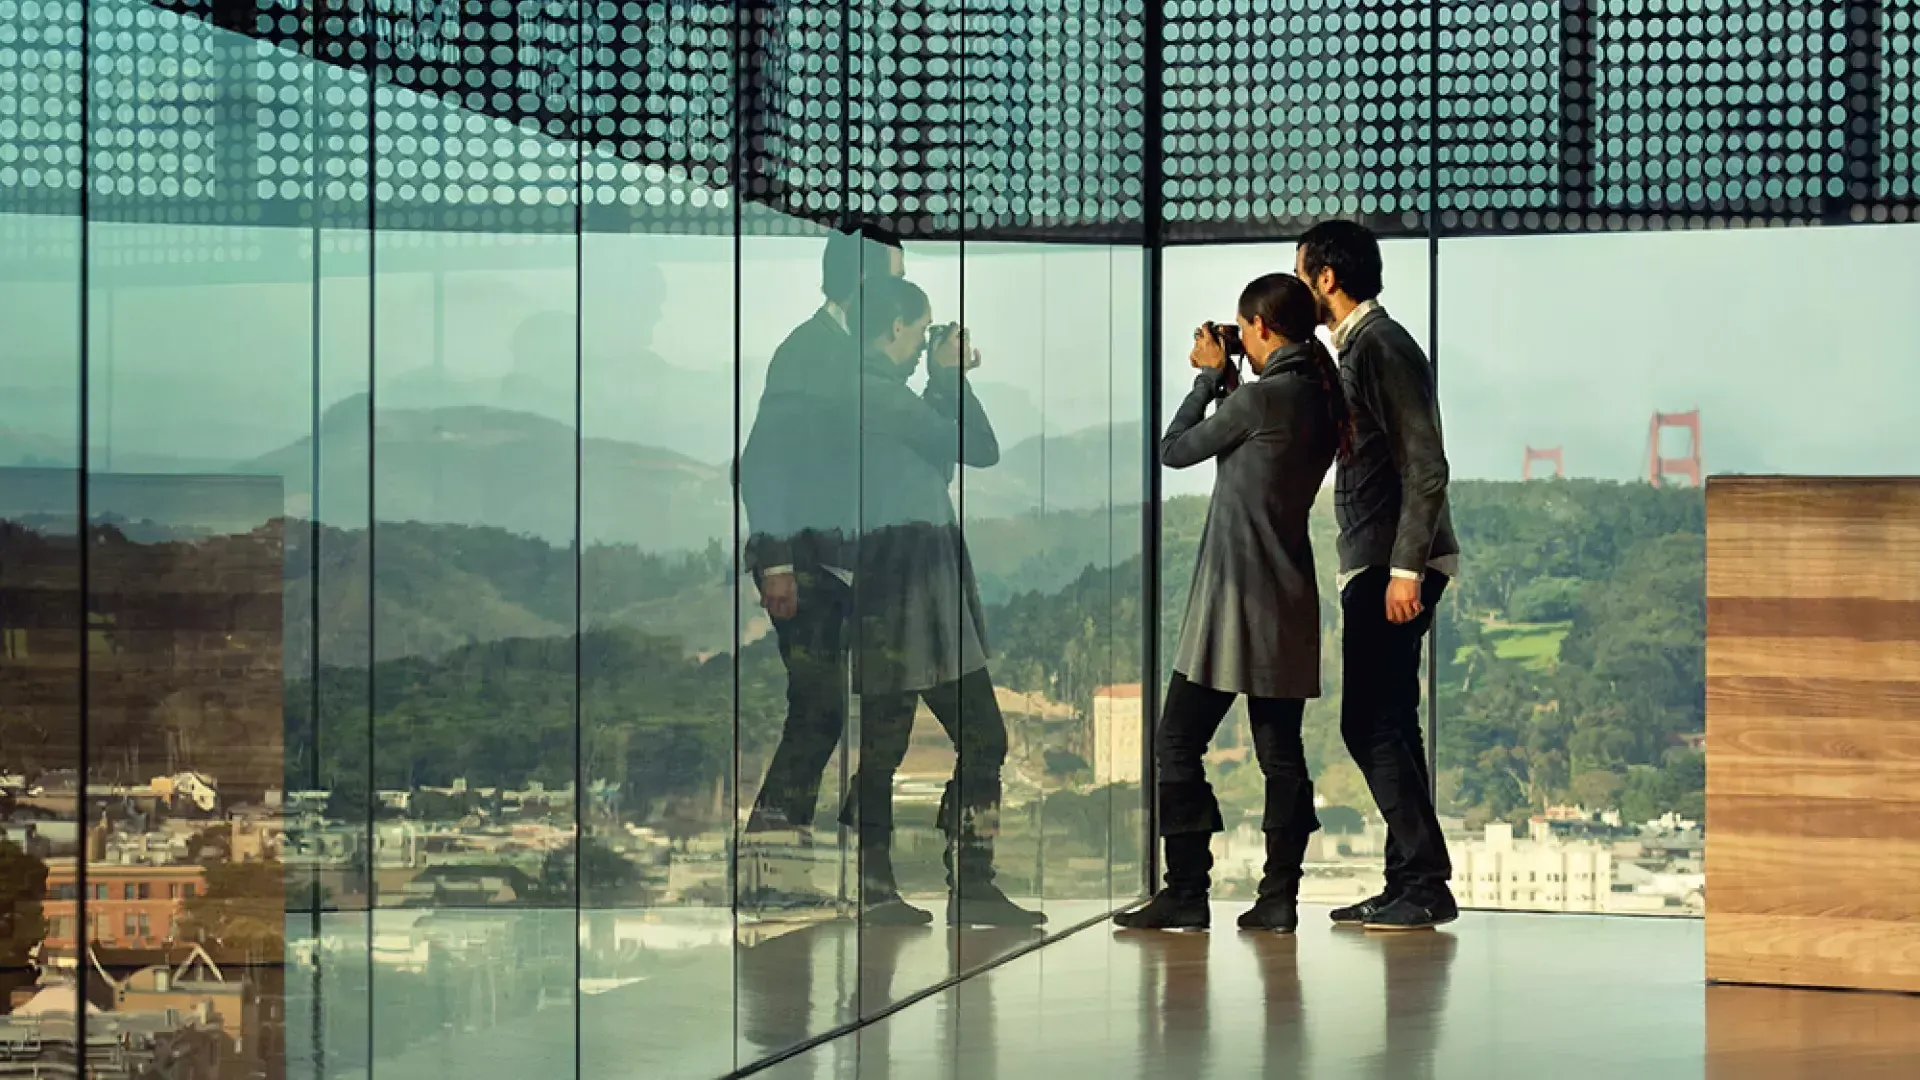 在贝博体彩app的德扬博物馆，两个人透过玻璃墙凝视。.